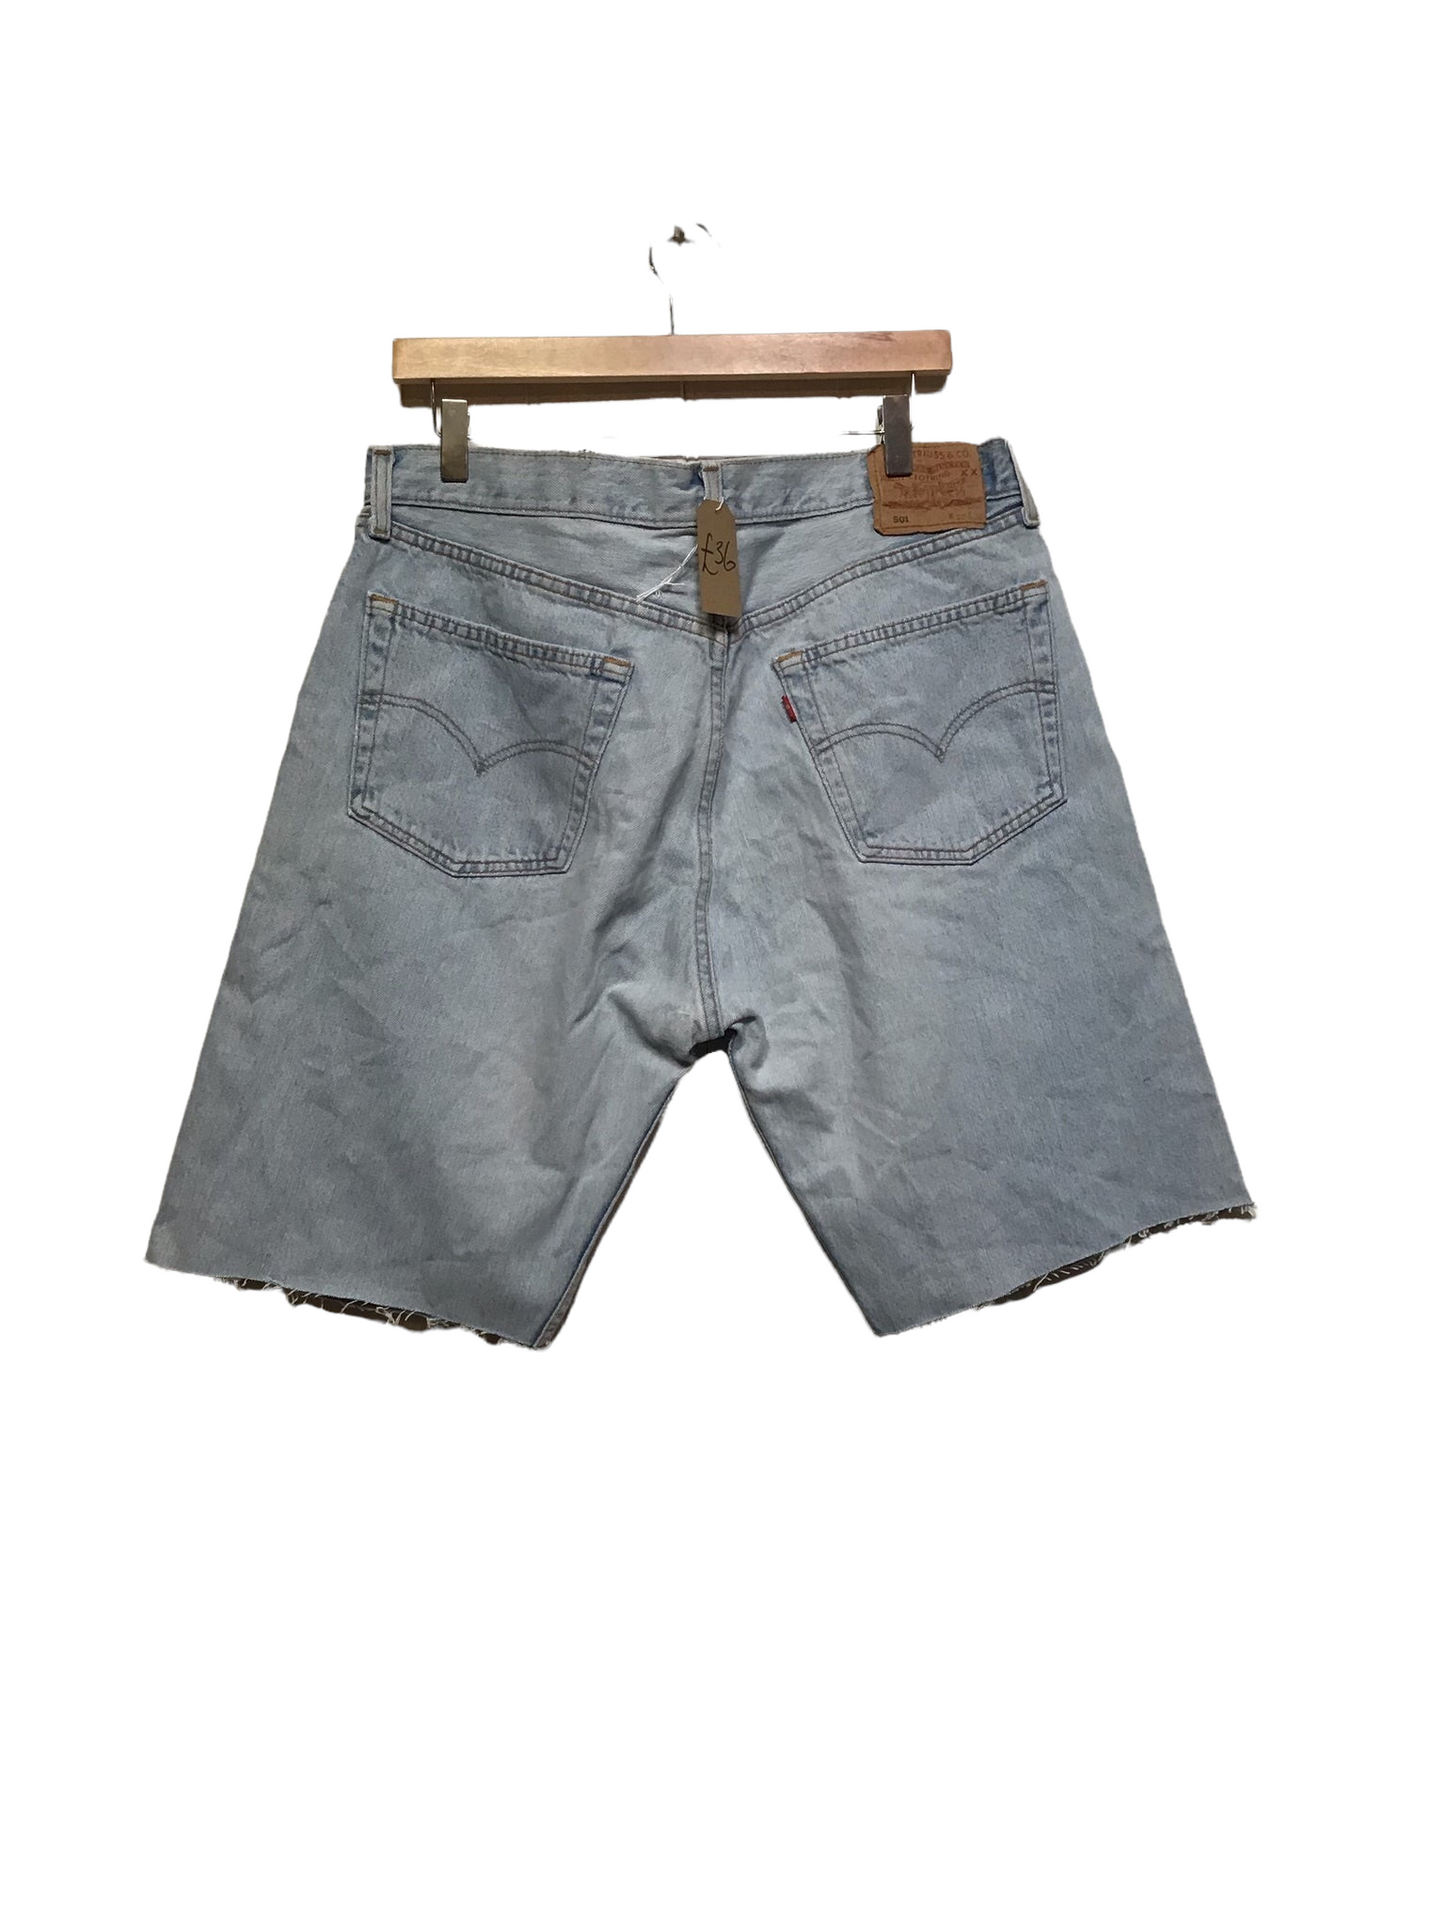 Levi’s Denim Shorts (Size L)